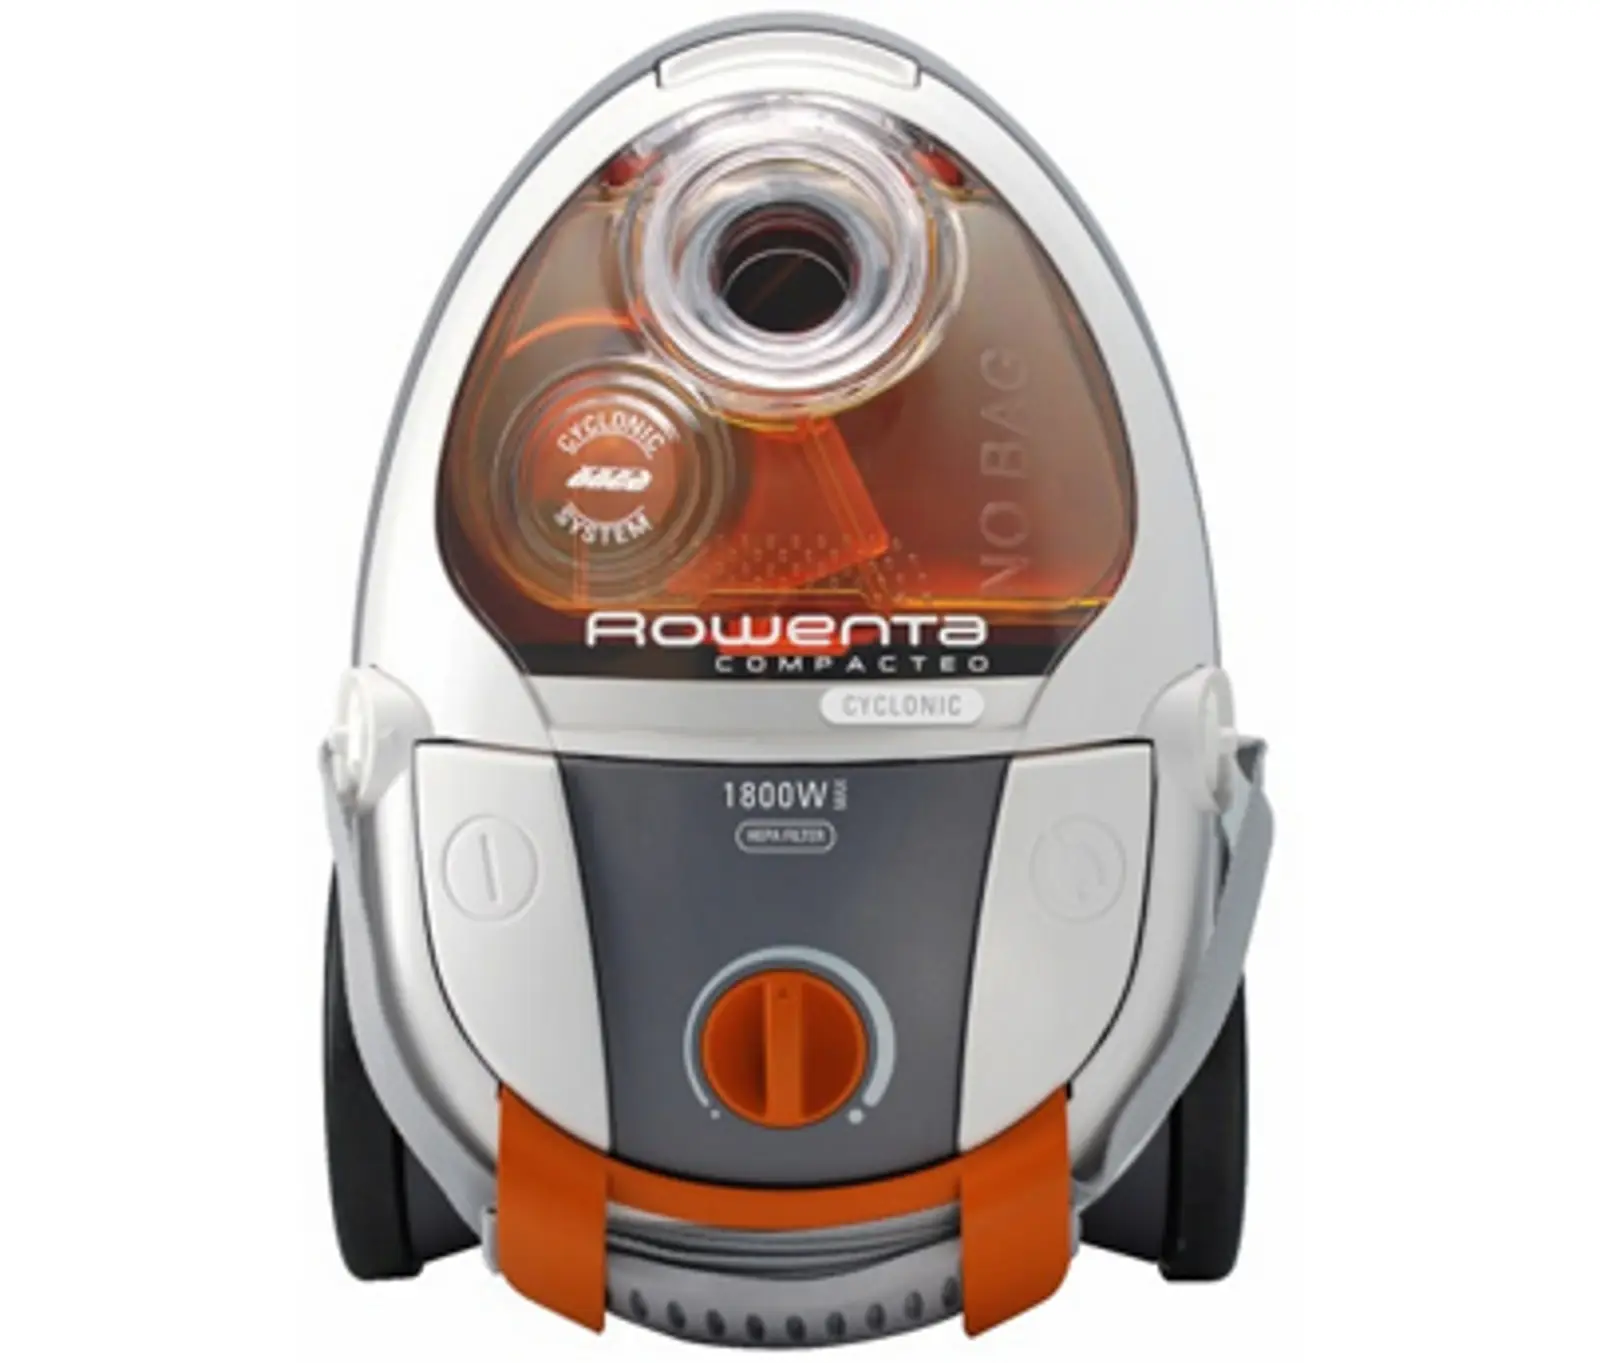 Ricambi e accessori Aspirapolvere Rowenta Vac Cleaner Compacteo Cyclonic - RO342301